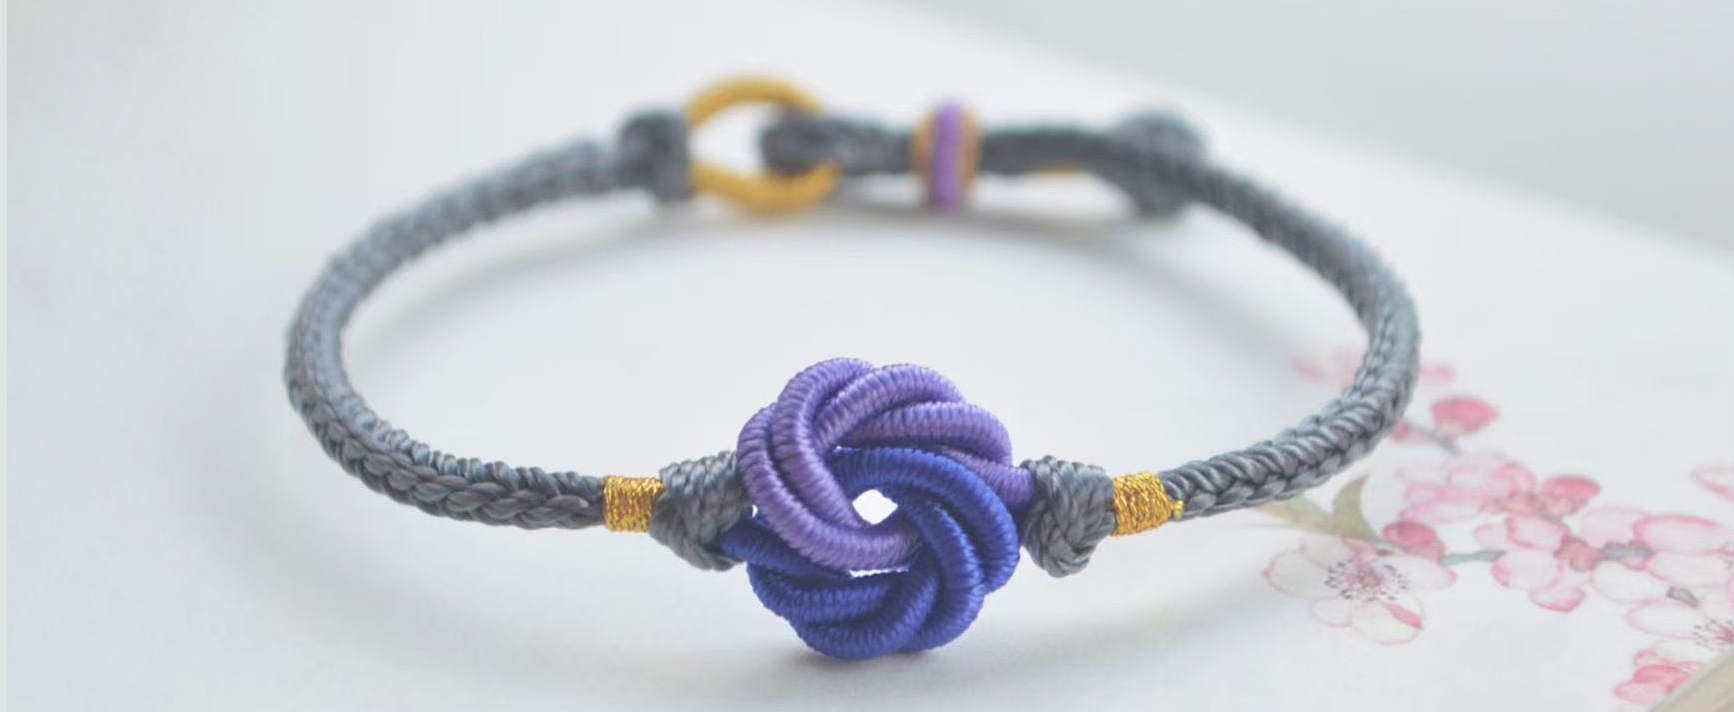 4 Ways to Make Braided Bracelets  wikiHow